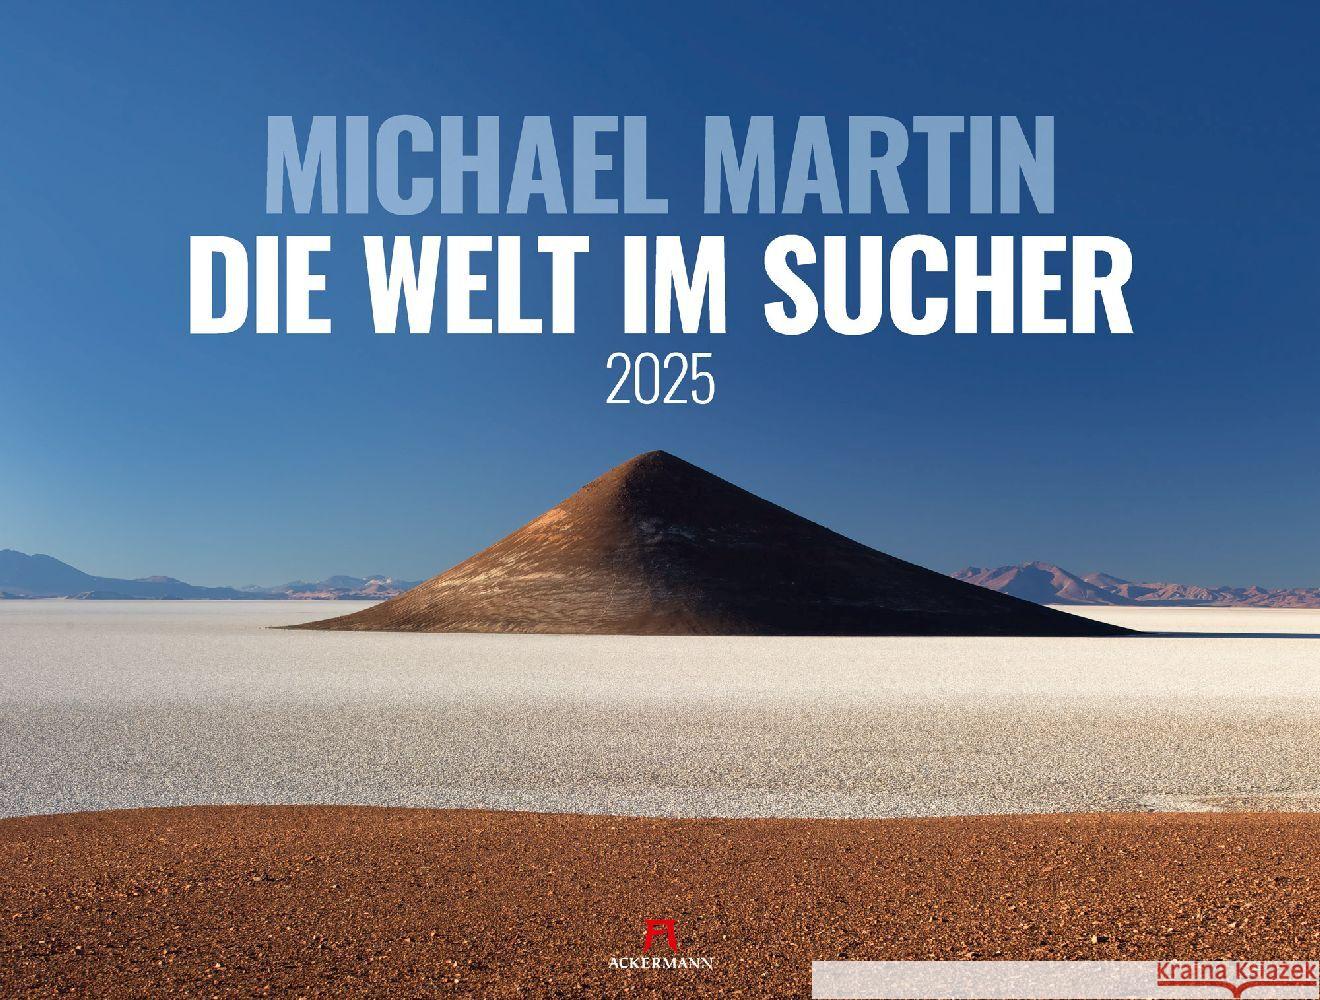 Die Welt im Sucher - Michael Martin Kalender 2025 Martin, Michael, Ackermann Kunstverlag 9783838435336 Ackermann Kunstverlag